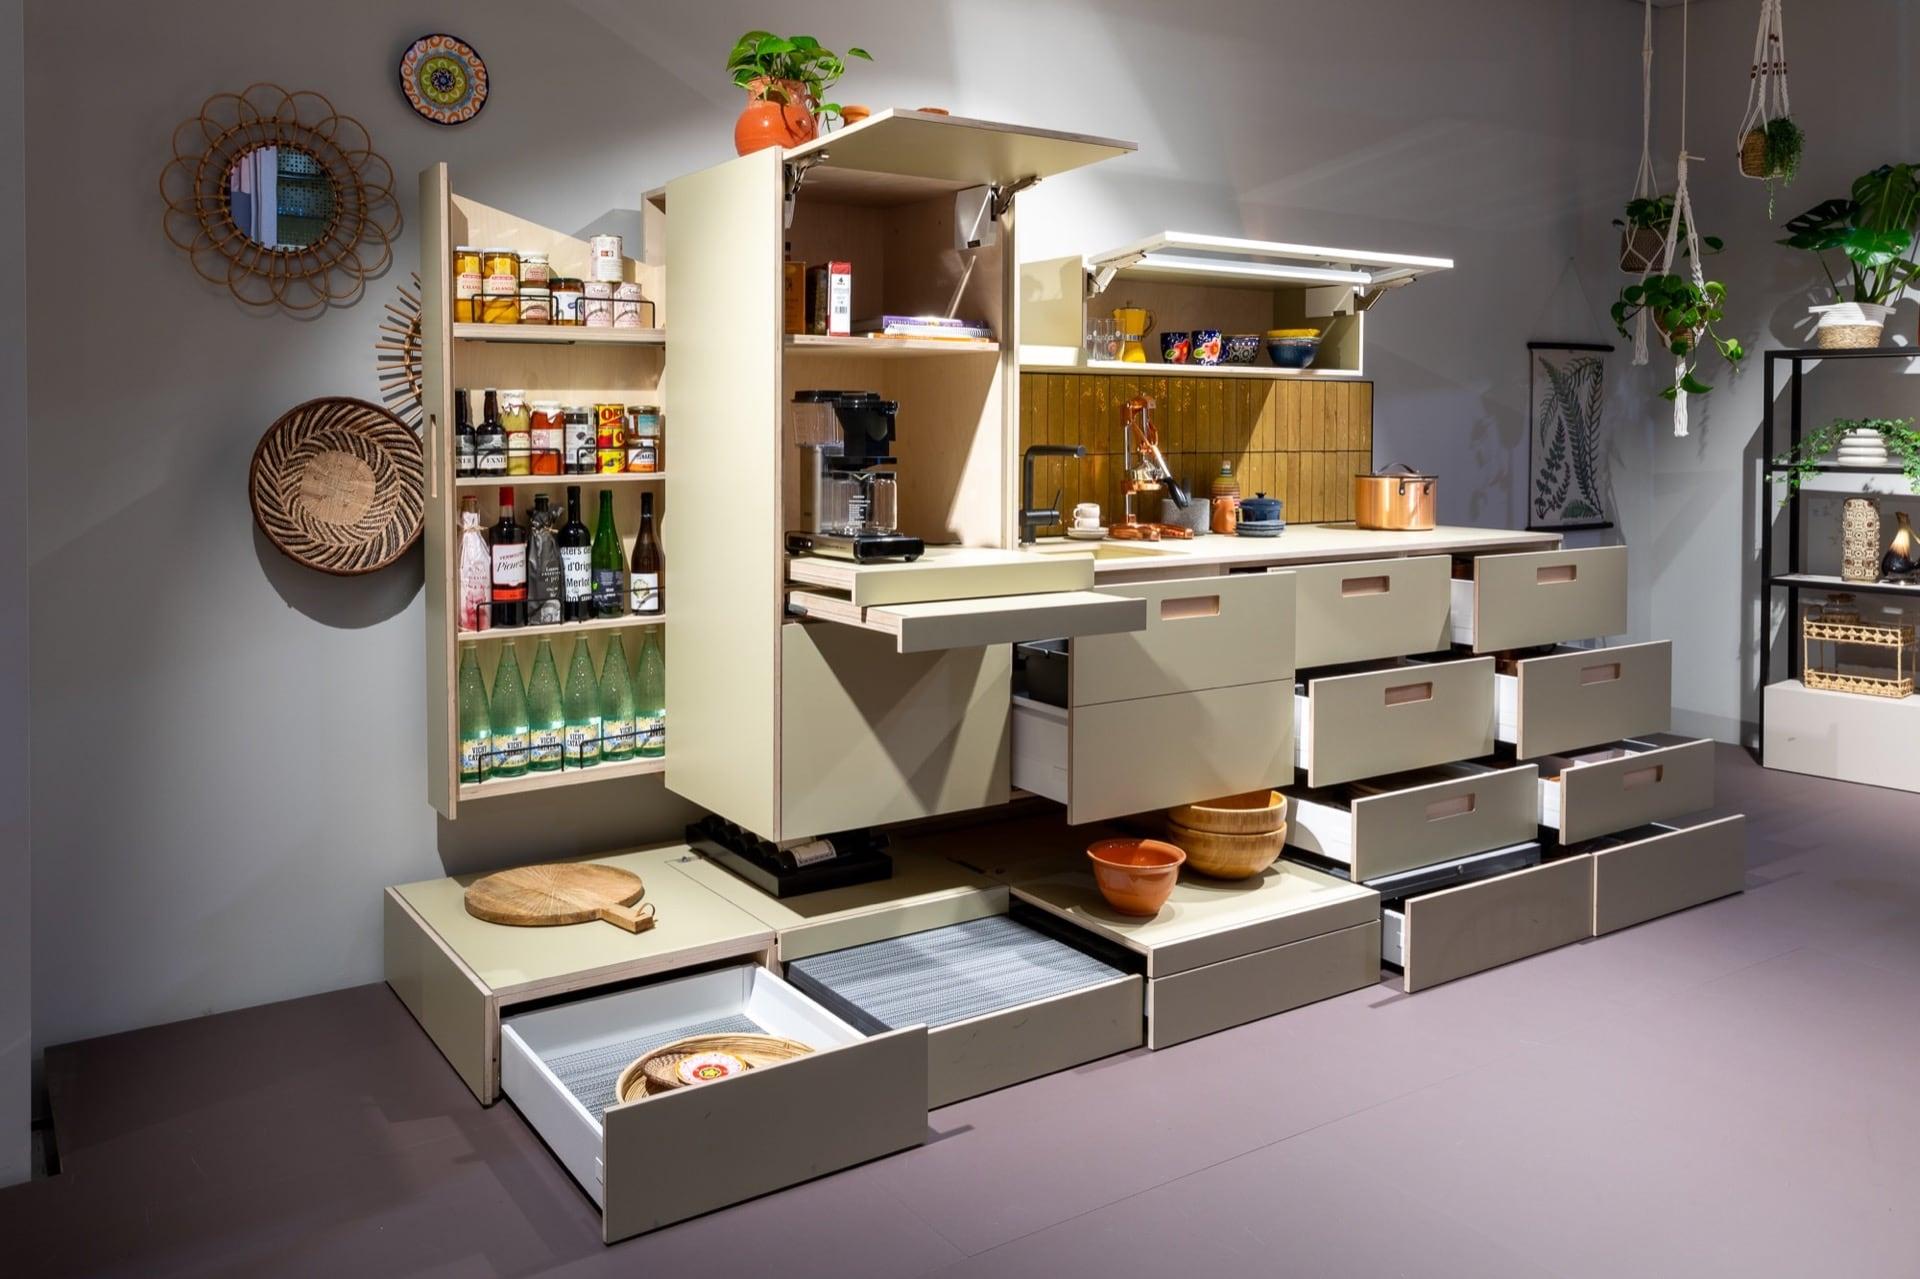 Dapur: Dapur serbaguna dengan penggunaan ruang yang baik selalu bisa dibuat tampil beda